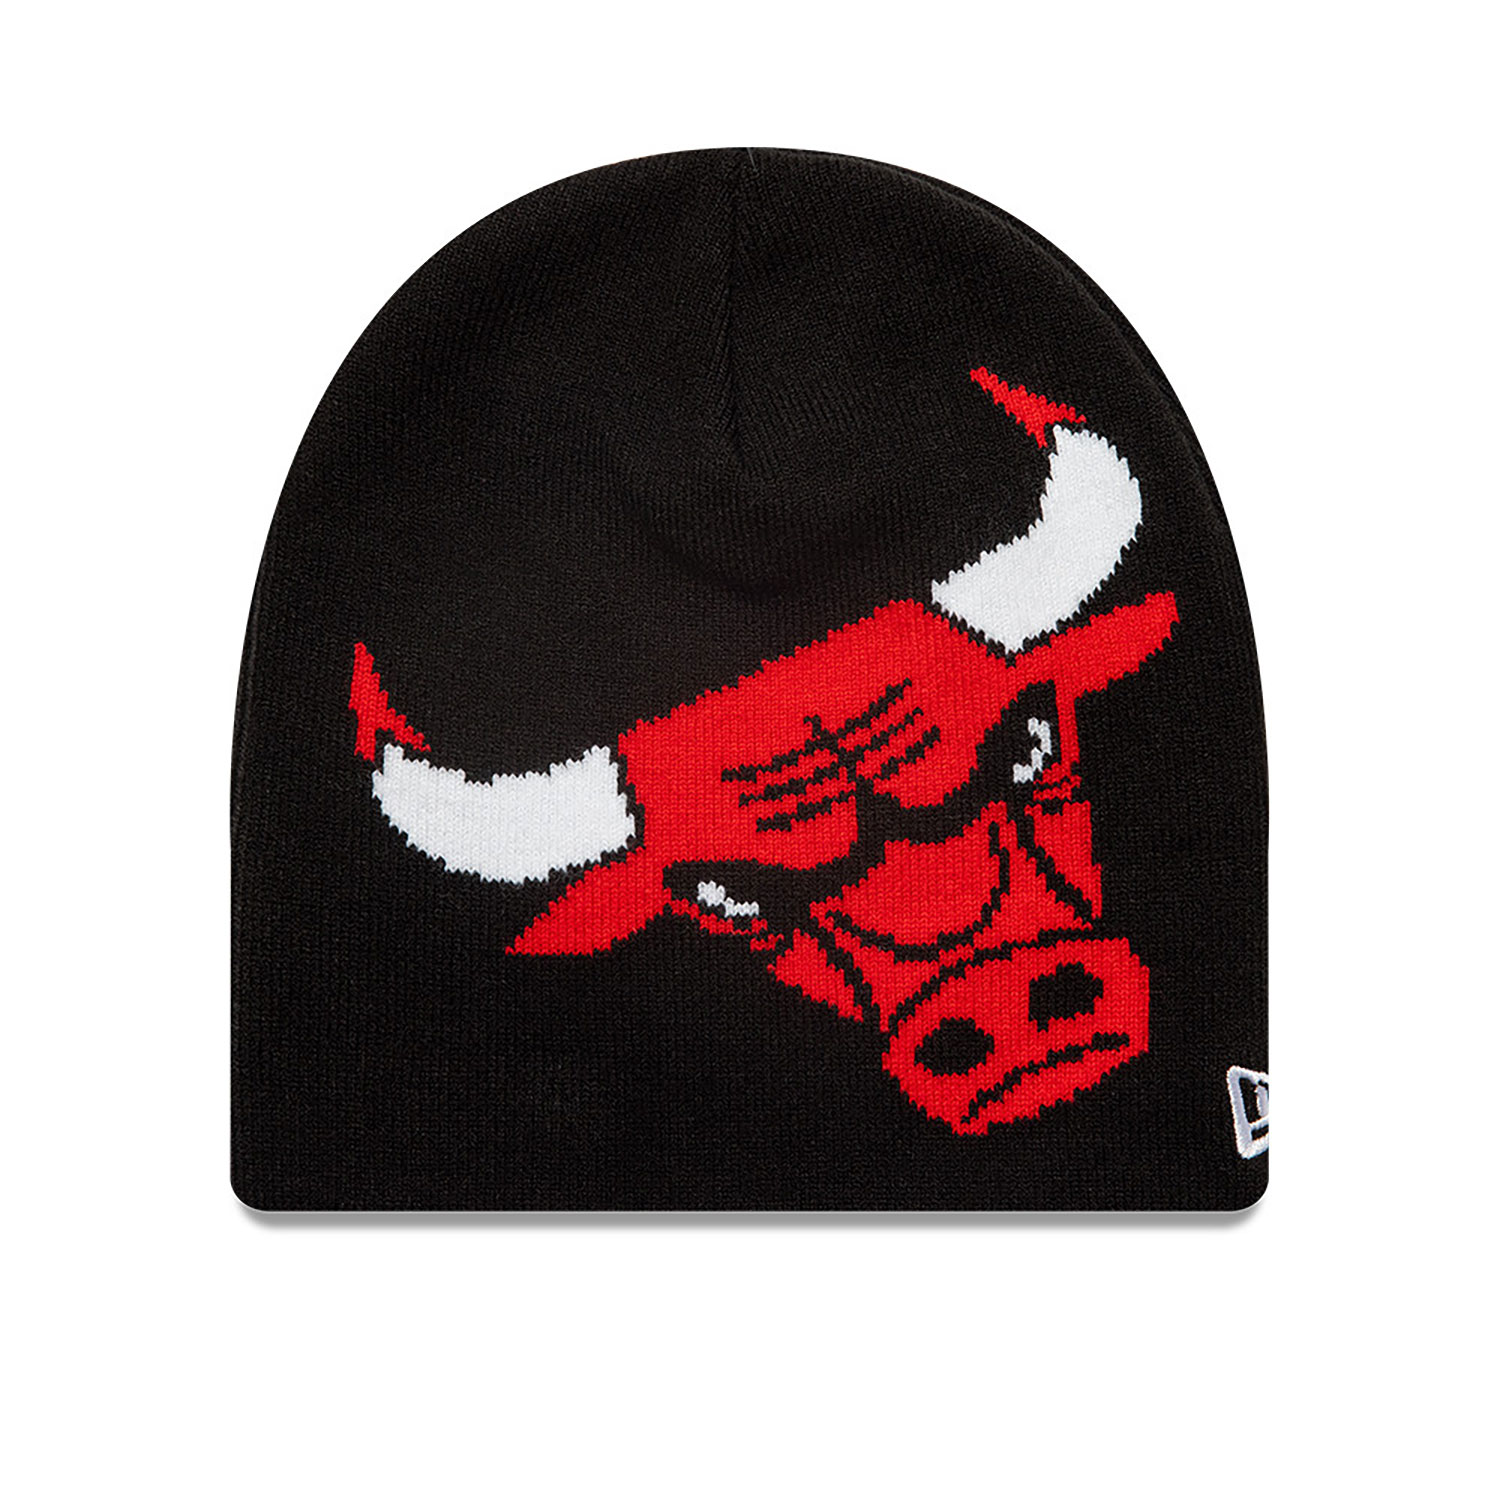 Chicago Bulls NBA Black Skull Knit Beanie Hat